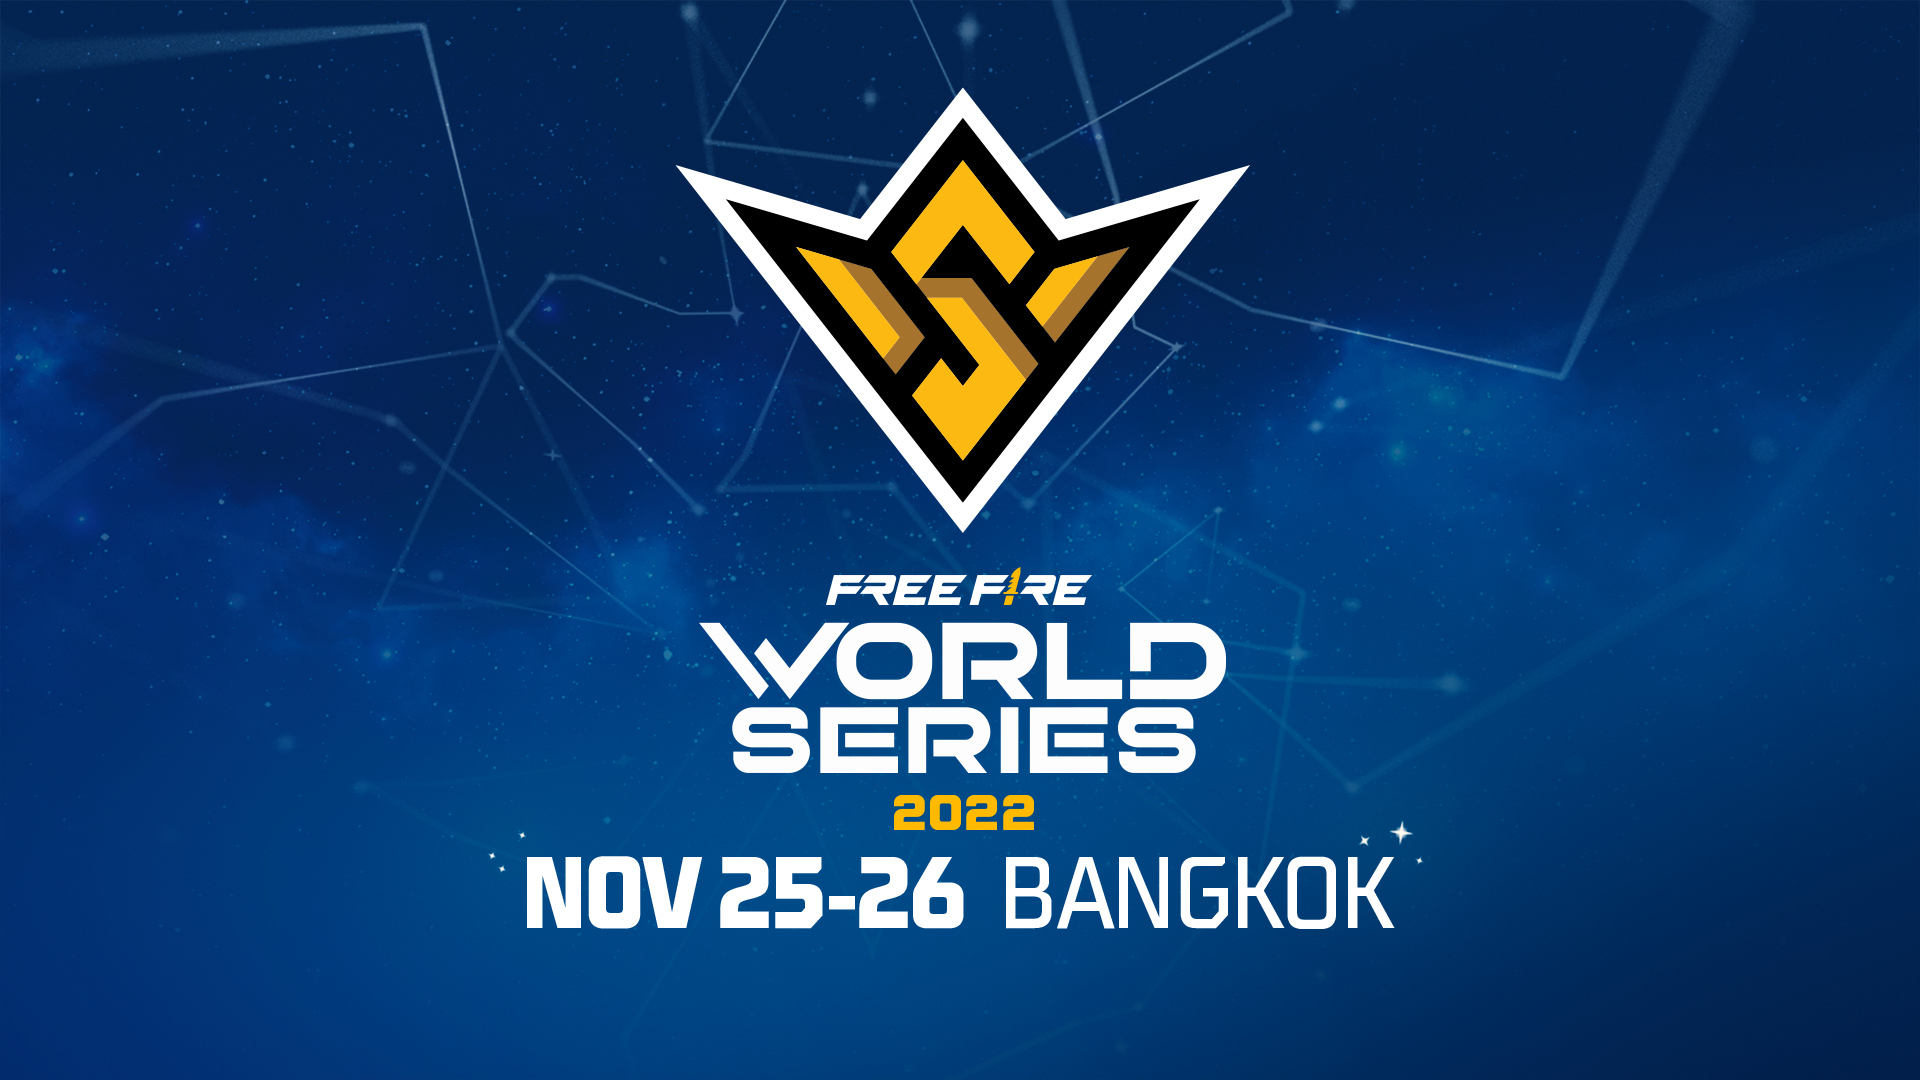 Free Fire World Series 2022將於 11月25日至 11月26日在泰國曼谷舉辦。官方提供